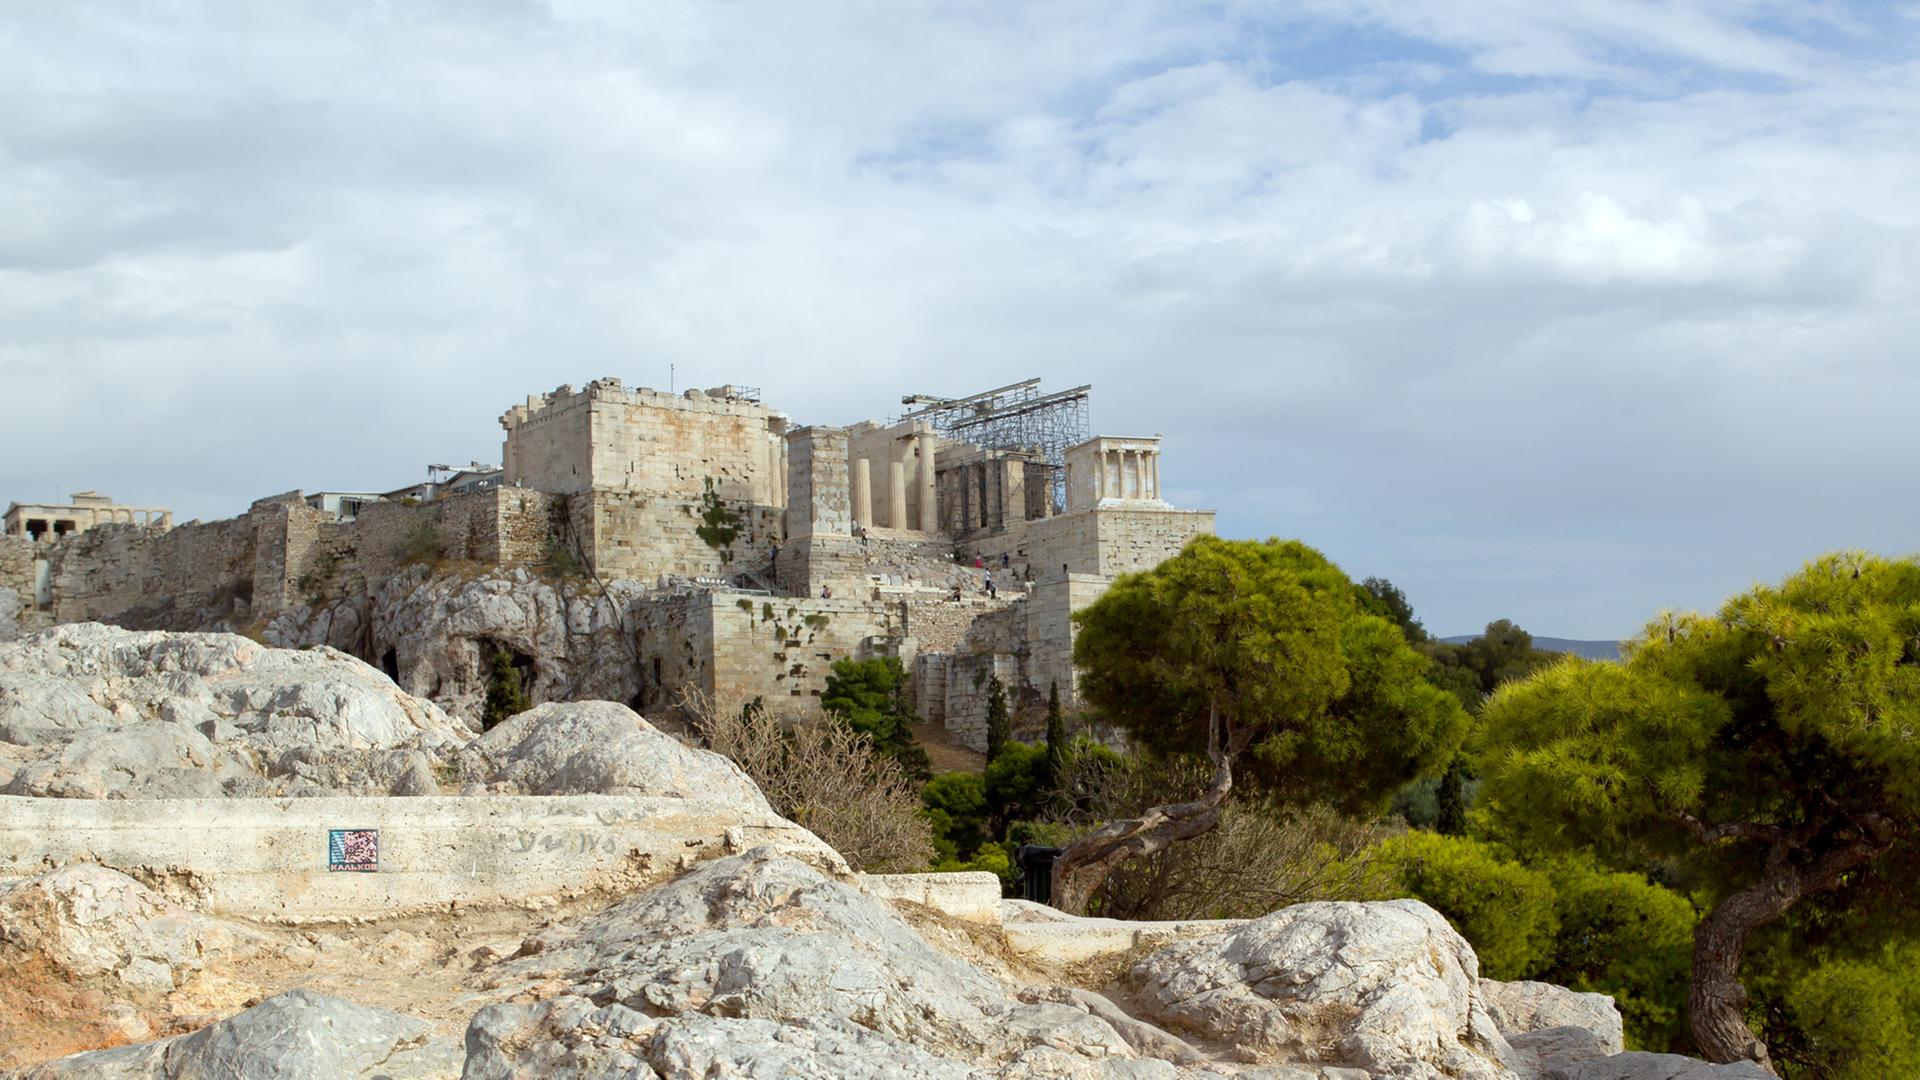 Blick auf die Akropolis in Athen (Griechenland), aufgenommen am 17.10.2012. Im Vordergrund sind die Propyläen zu sehen, die den monumentalen und repräsentativen Torbau zum heiligen Bezirk der Akropolis bilden.